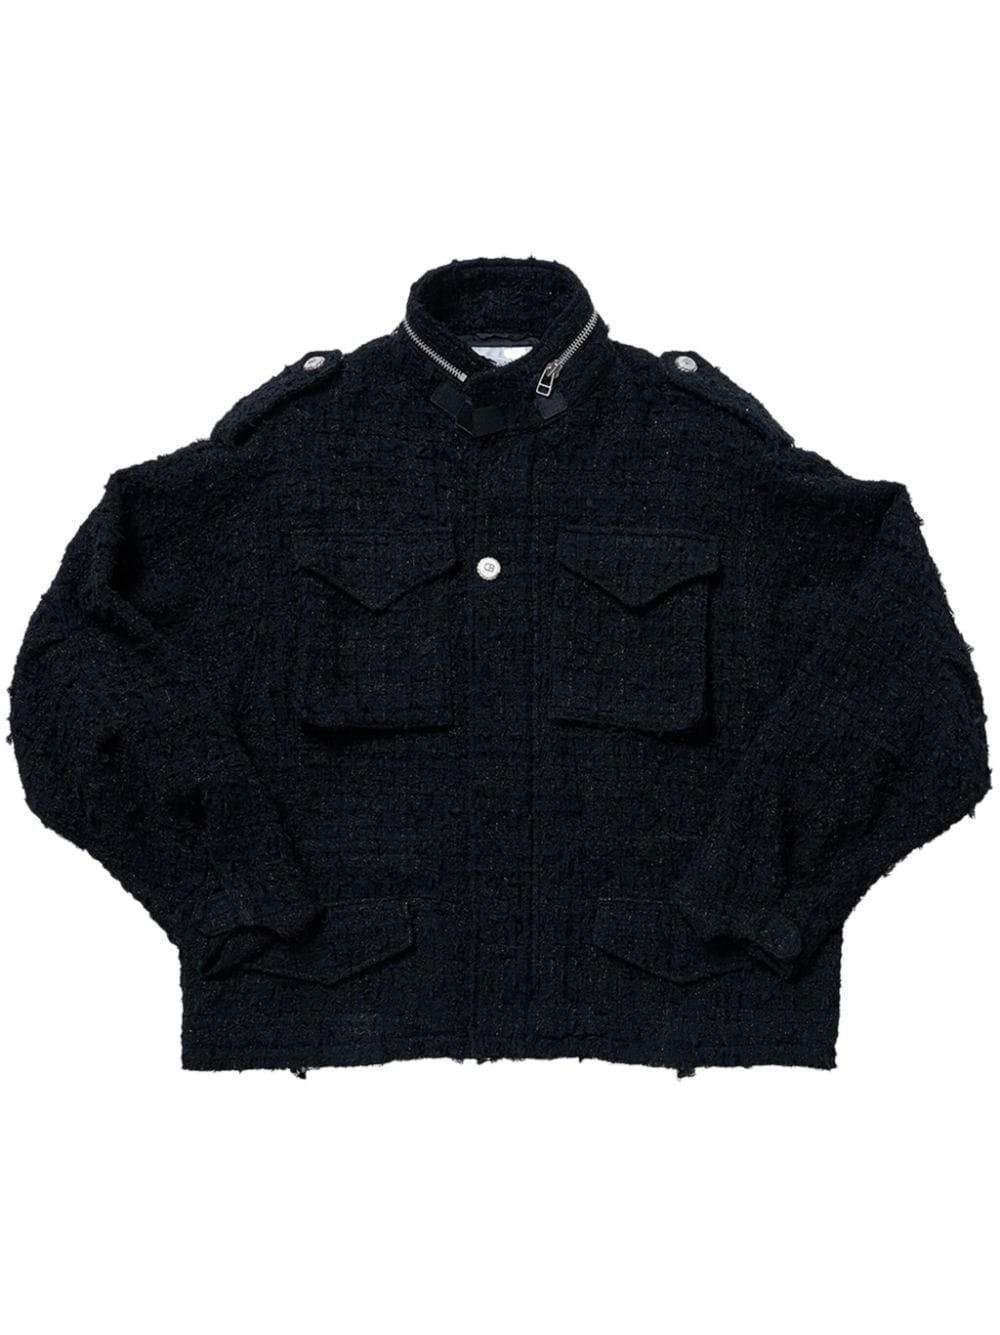 raw-cut tweed military jacket - 1